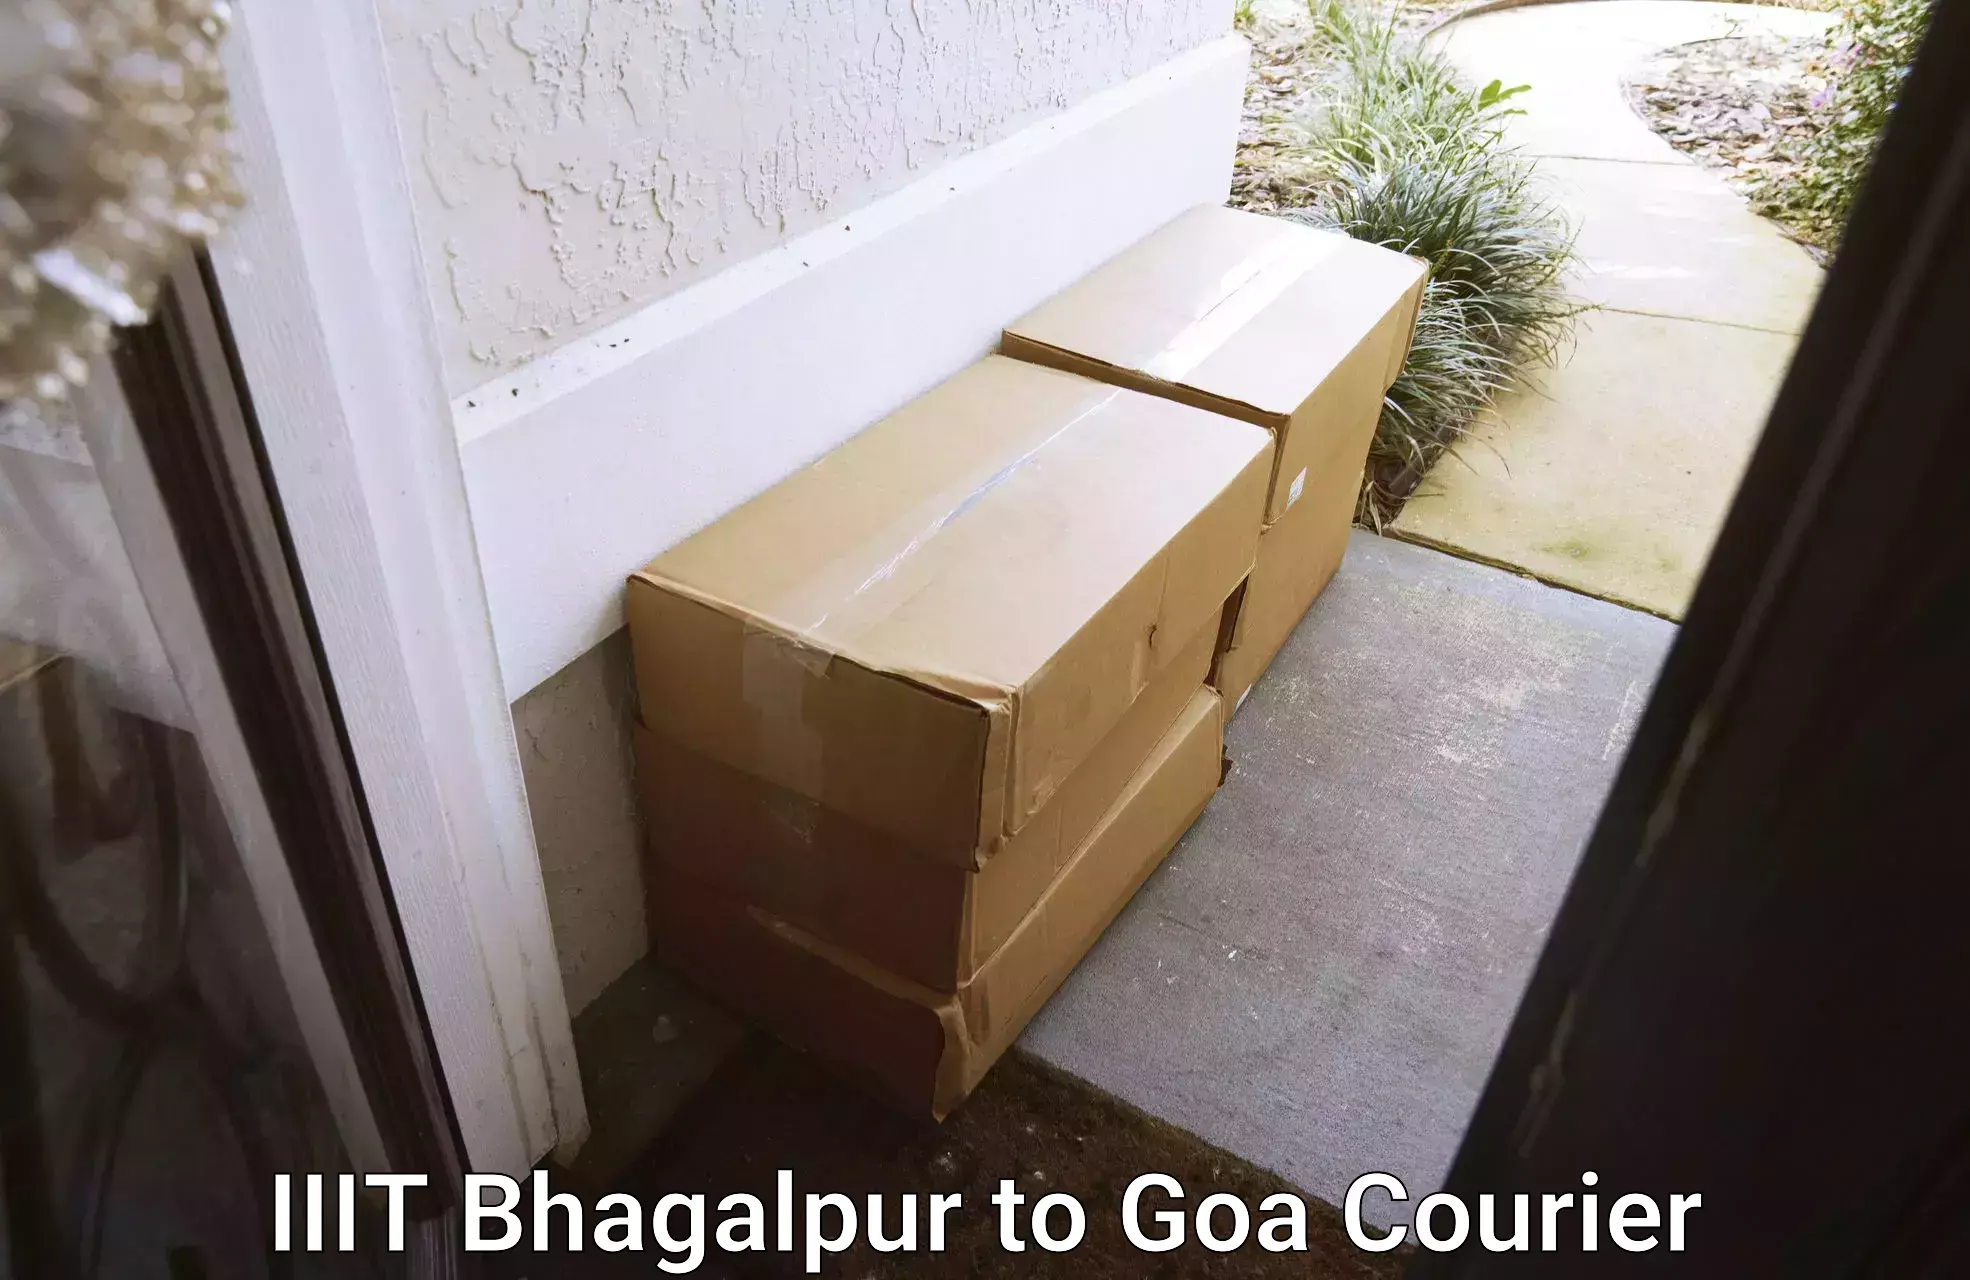 Household logistics services IIIT Bhagalpur to IIT Goa